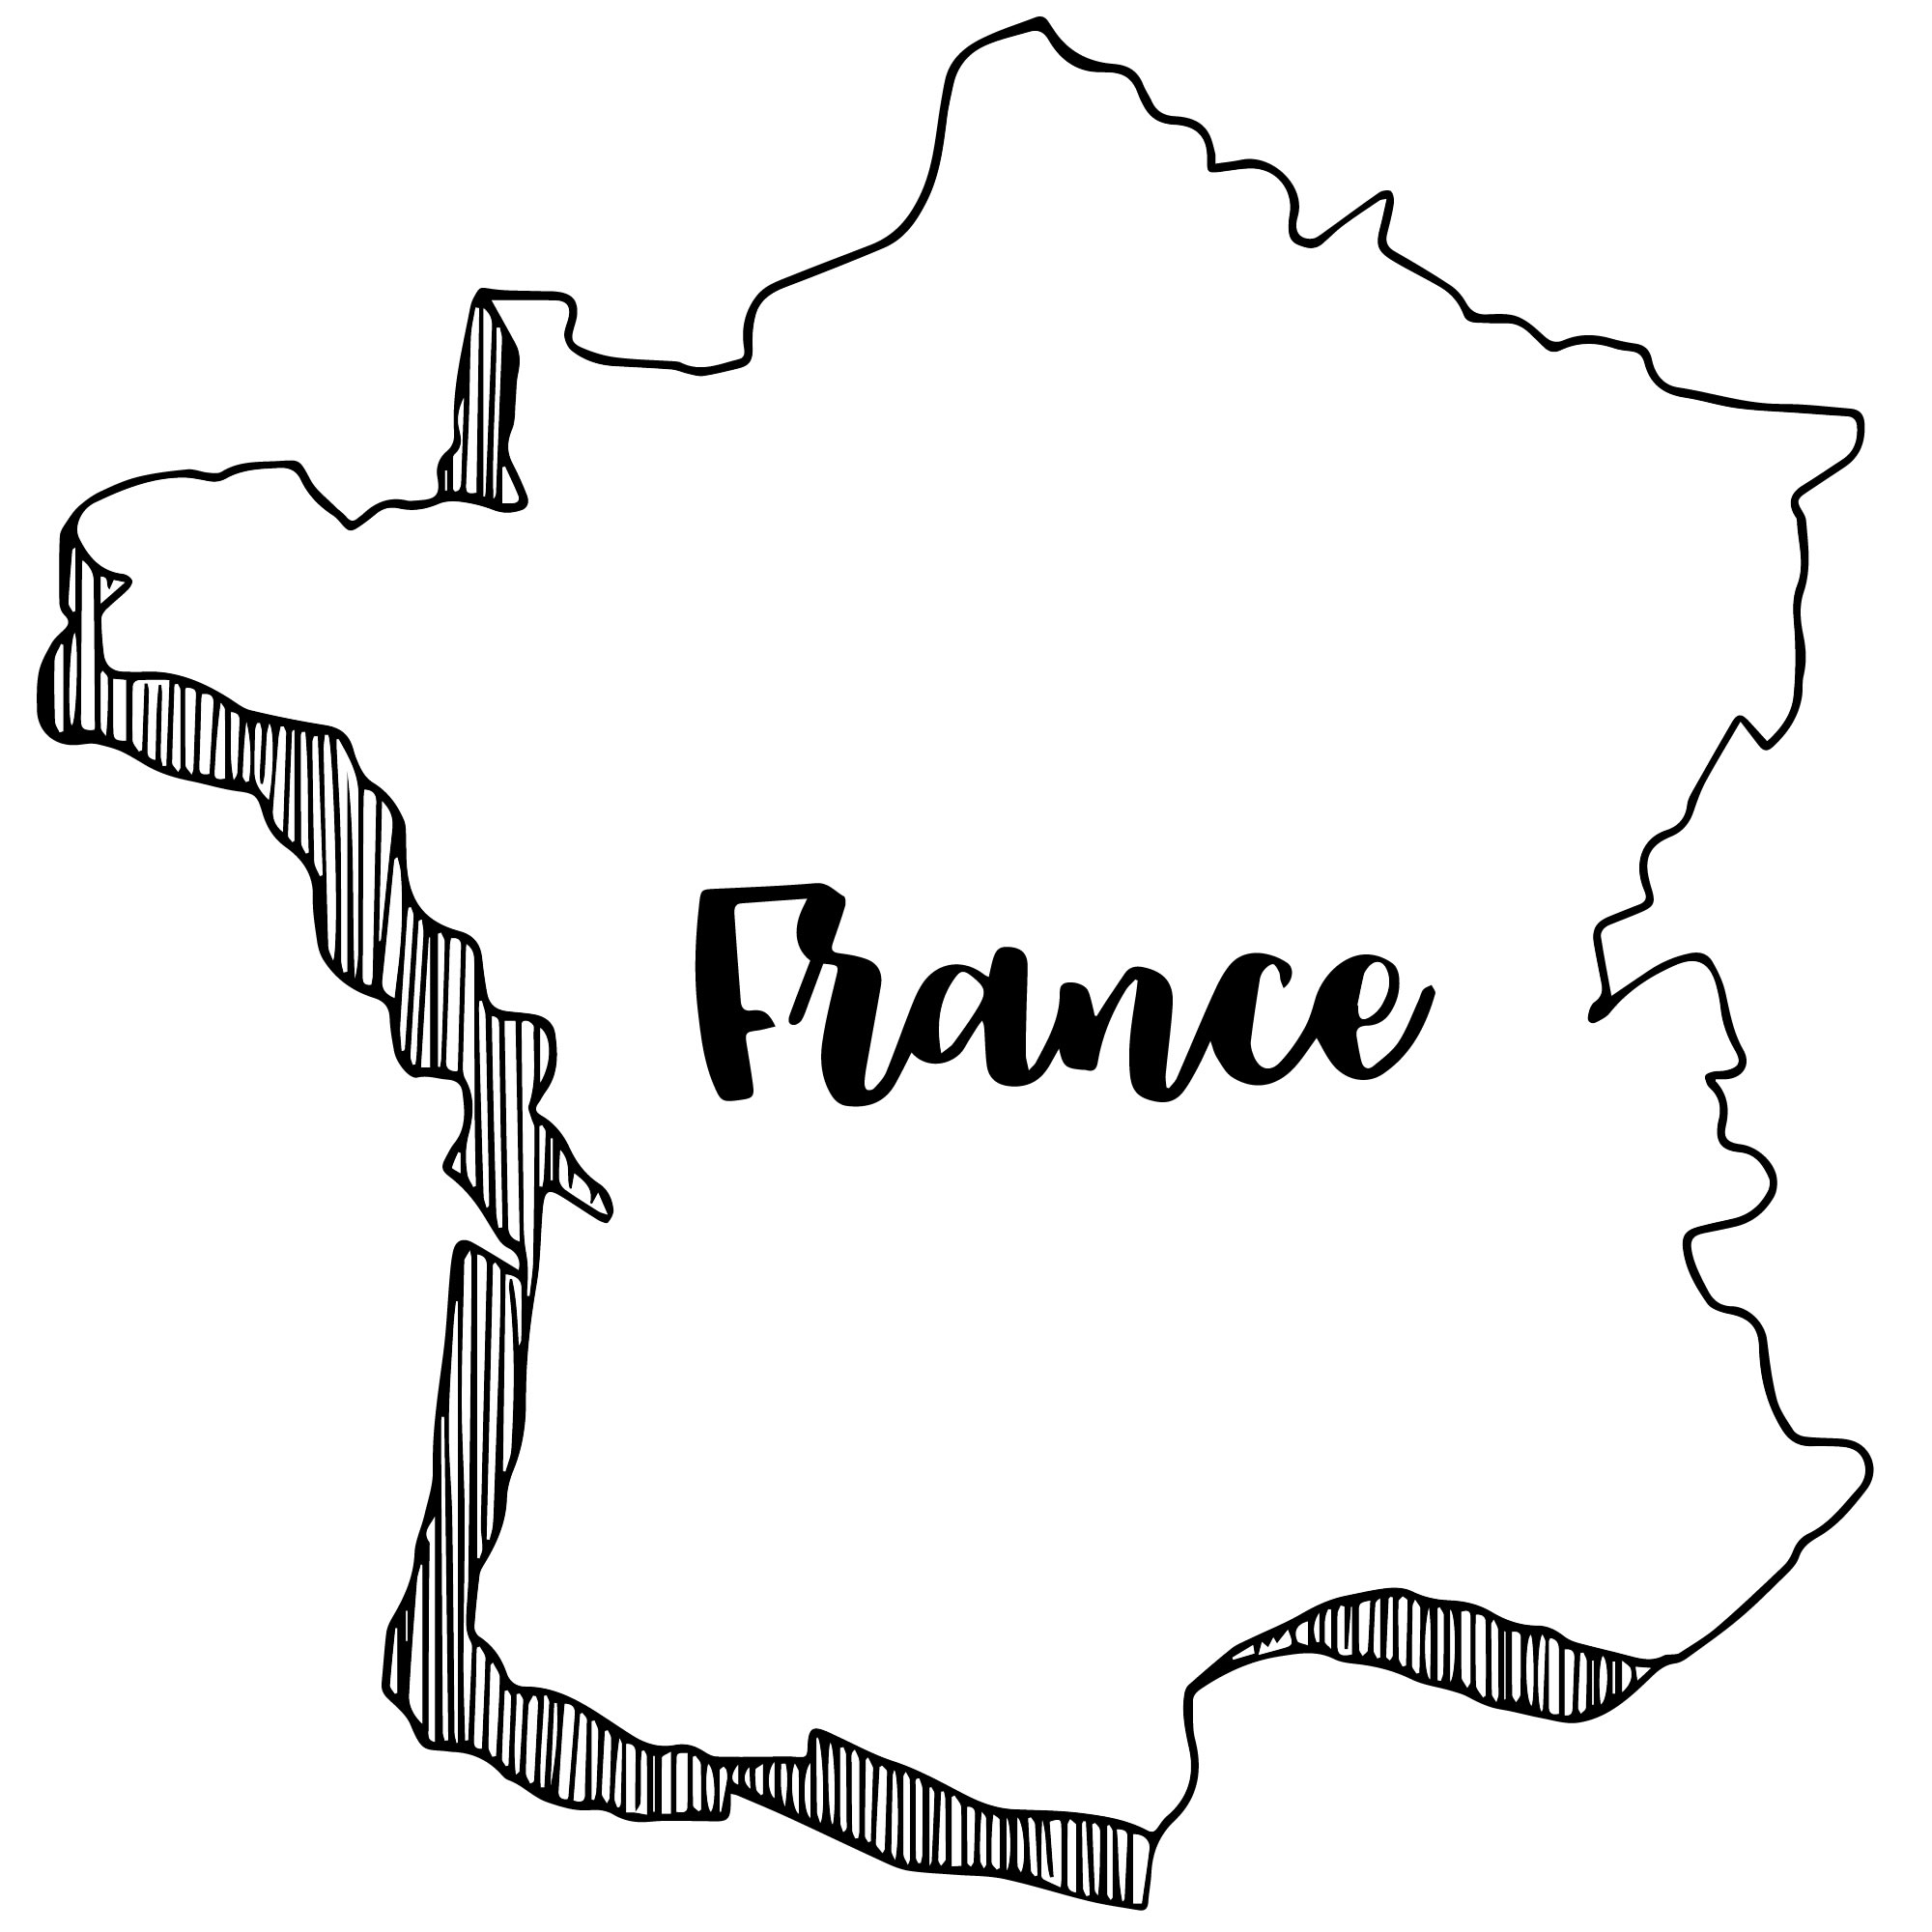 Карта Франции — раскраска для детей. Распечатать бесплатно.